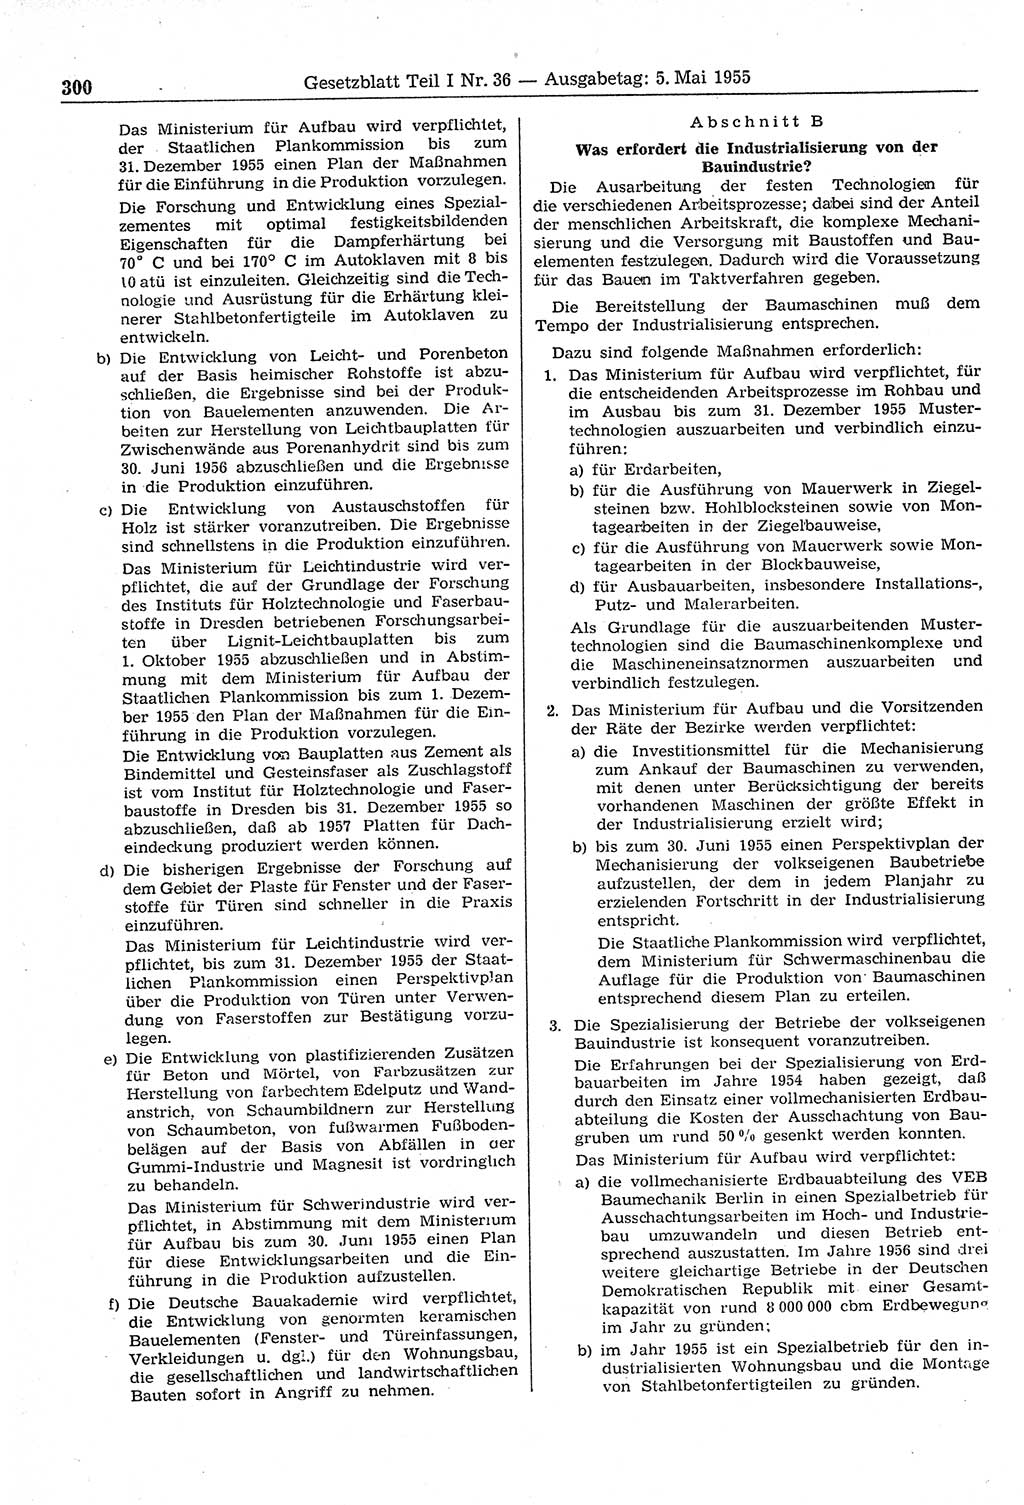 Gesetzblatt (GBl.) der Deutschen Demokratischen Republik (DDR) Teil Ⅰ 1955, Seite 300 (GBl. DDR Ⅰ 1955, S. 300)